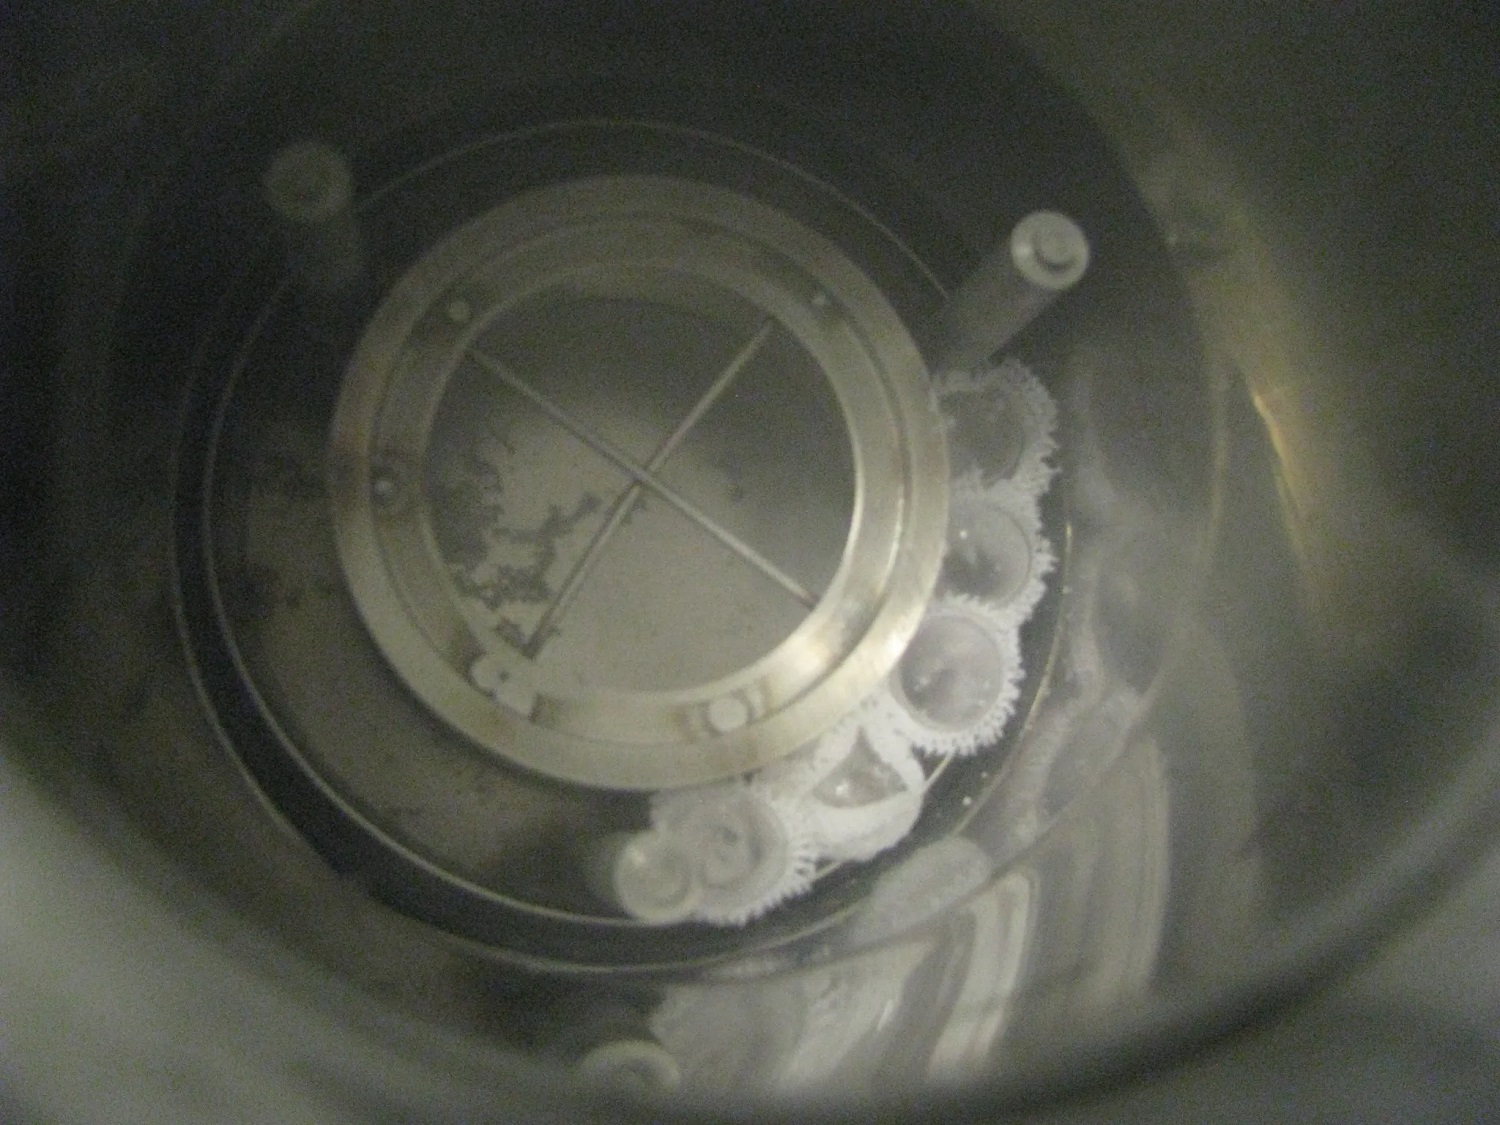 Questa immagine mostra i campioni sperimentali caricati nel contenitore dove saranno immersi nell'azoto liquido e sottoposti a radiazioni gamma. Crediti: Candace Davison